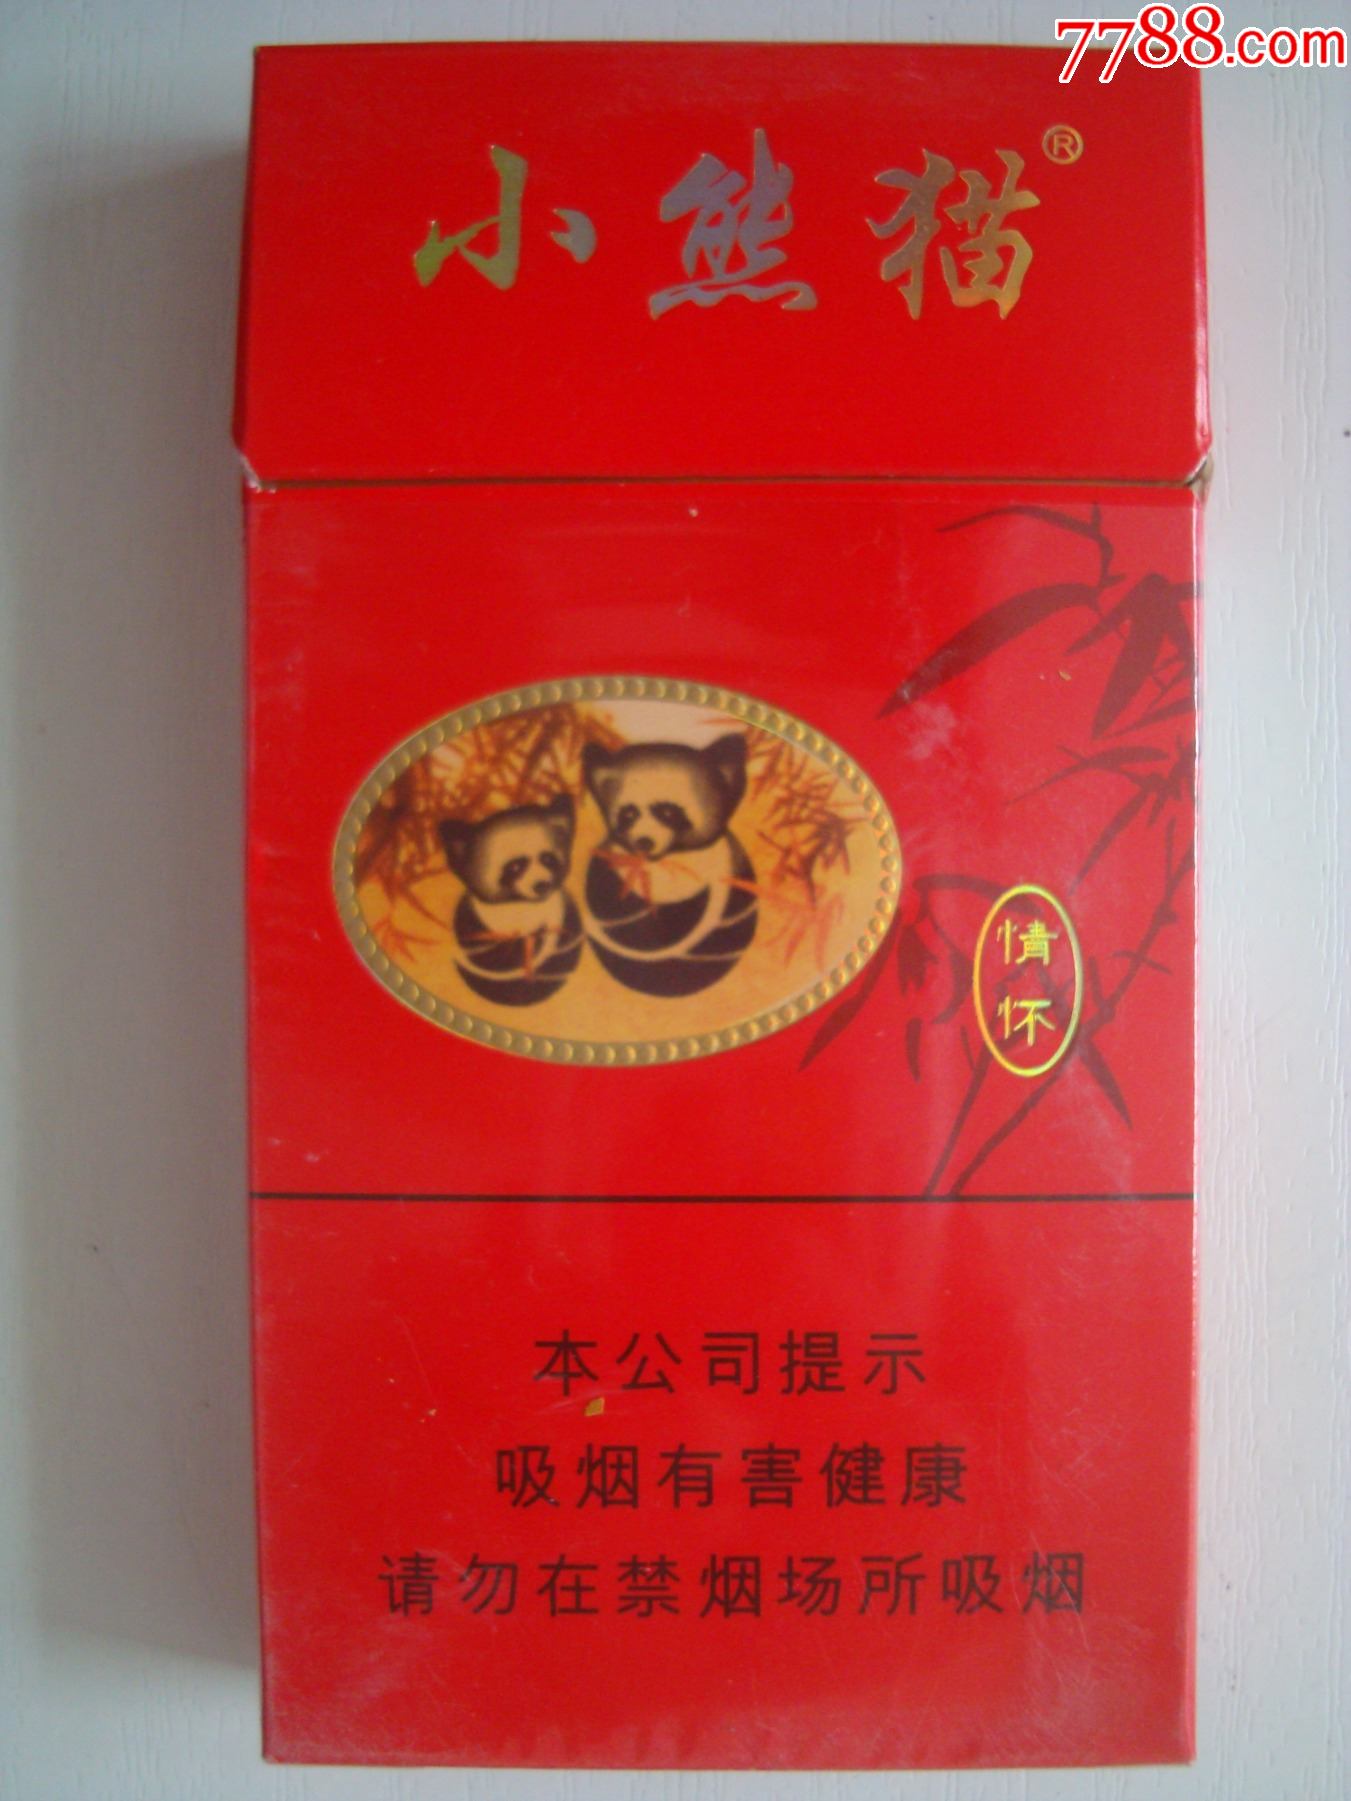 40支蓝铁桶小熊猫香烟图片